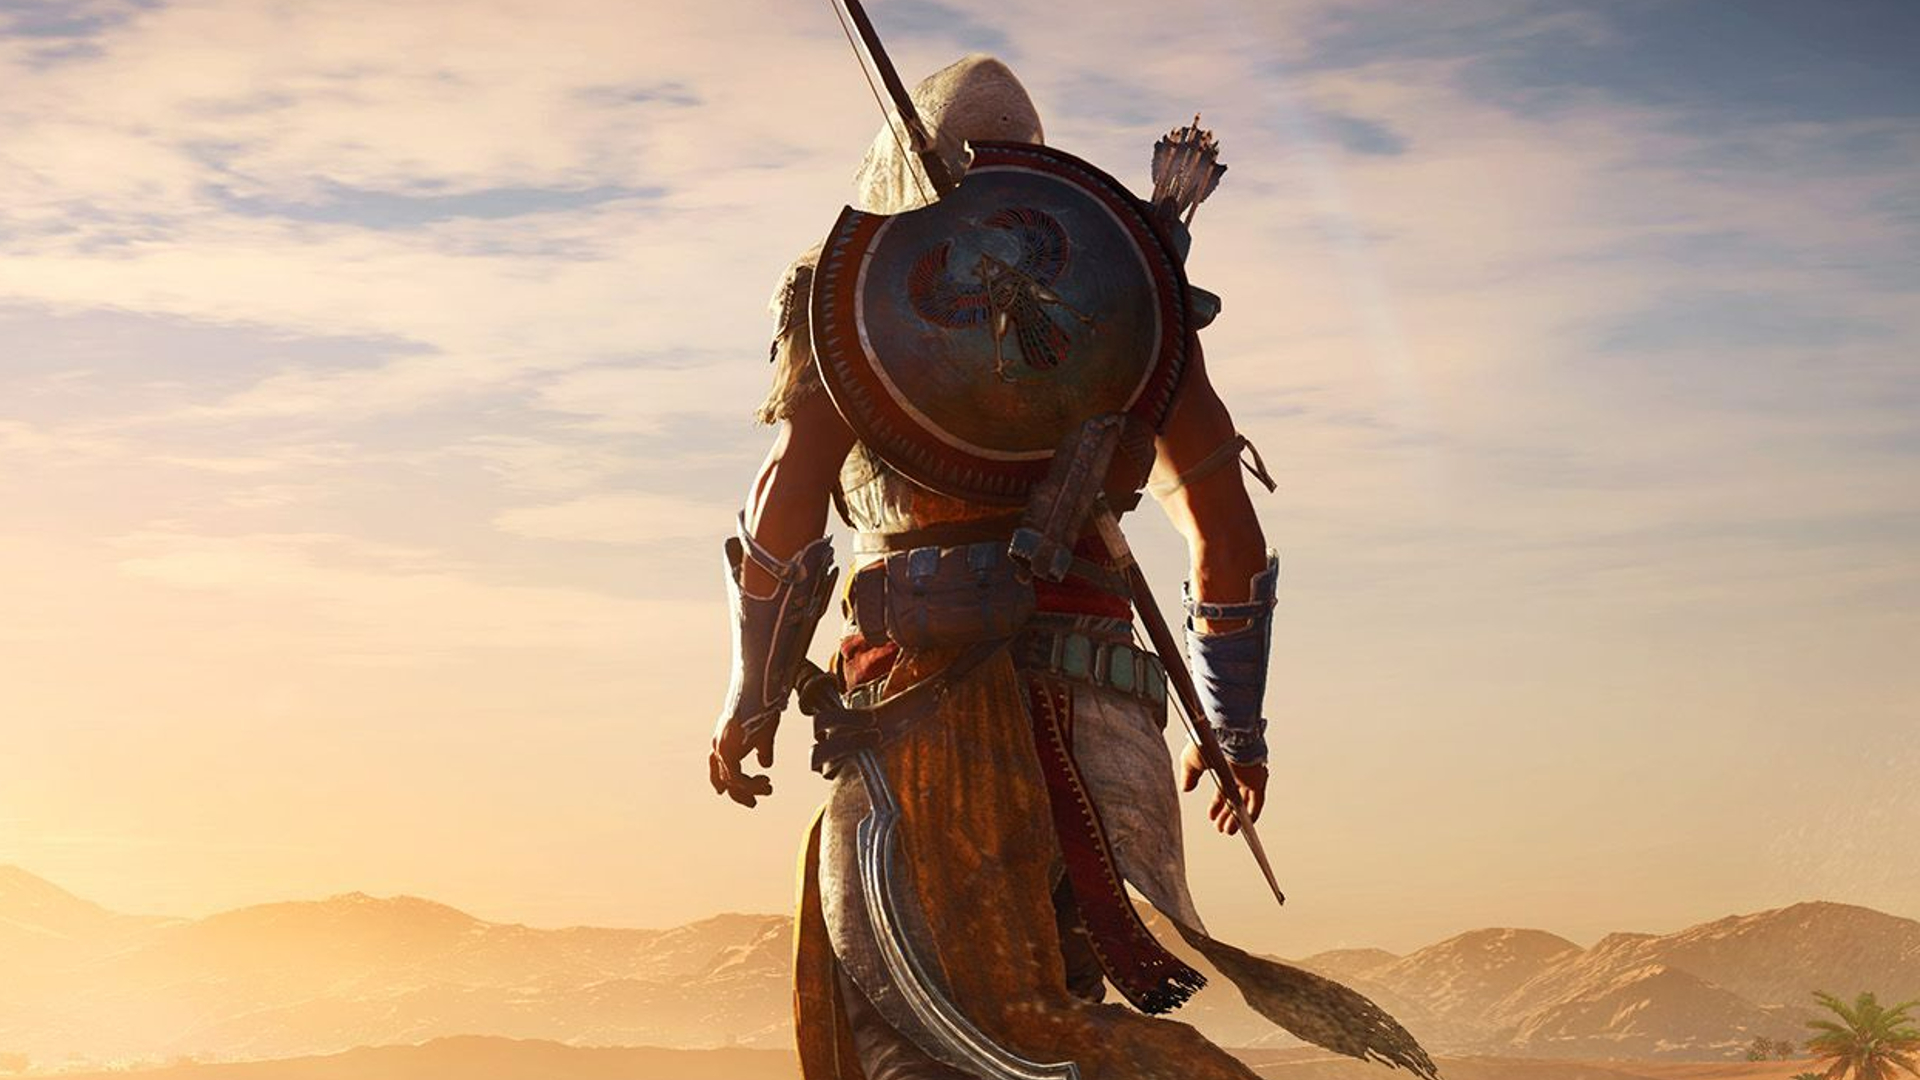 Assassin's Creed in Mesoamerika wäre eigentlich großartig gewesen